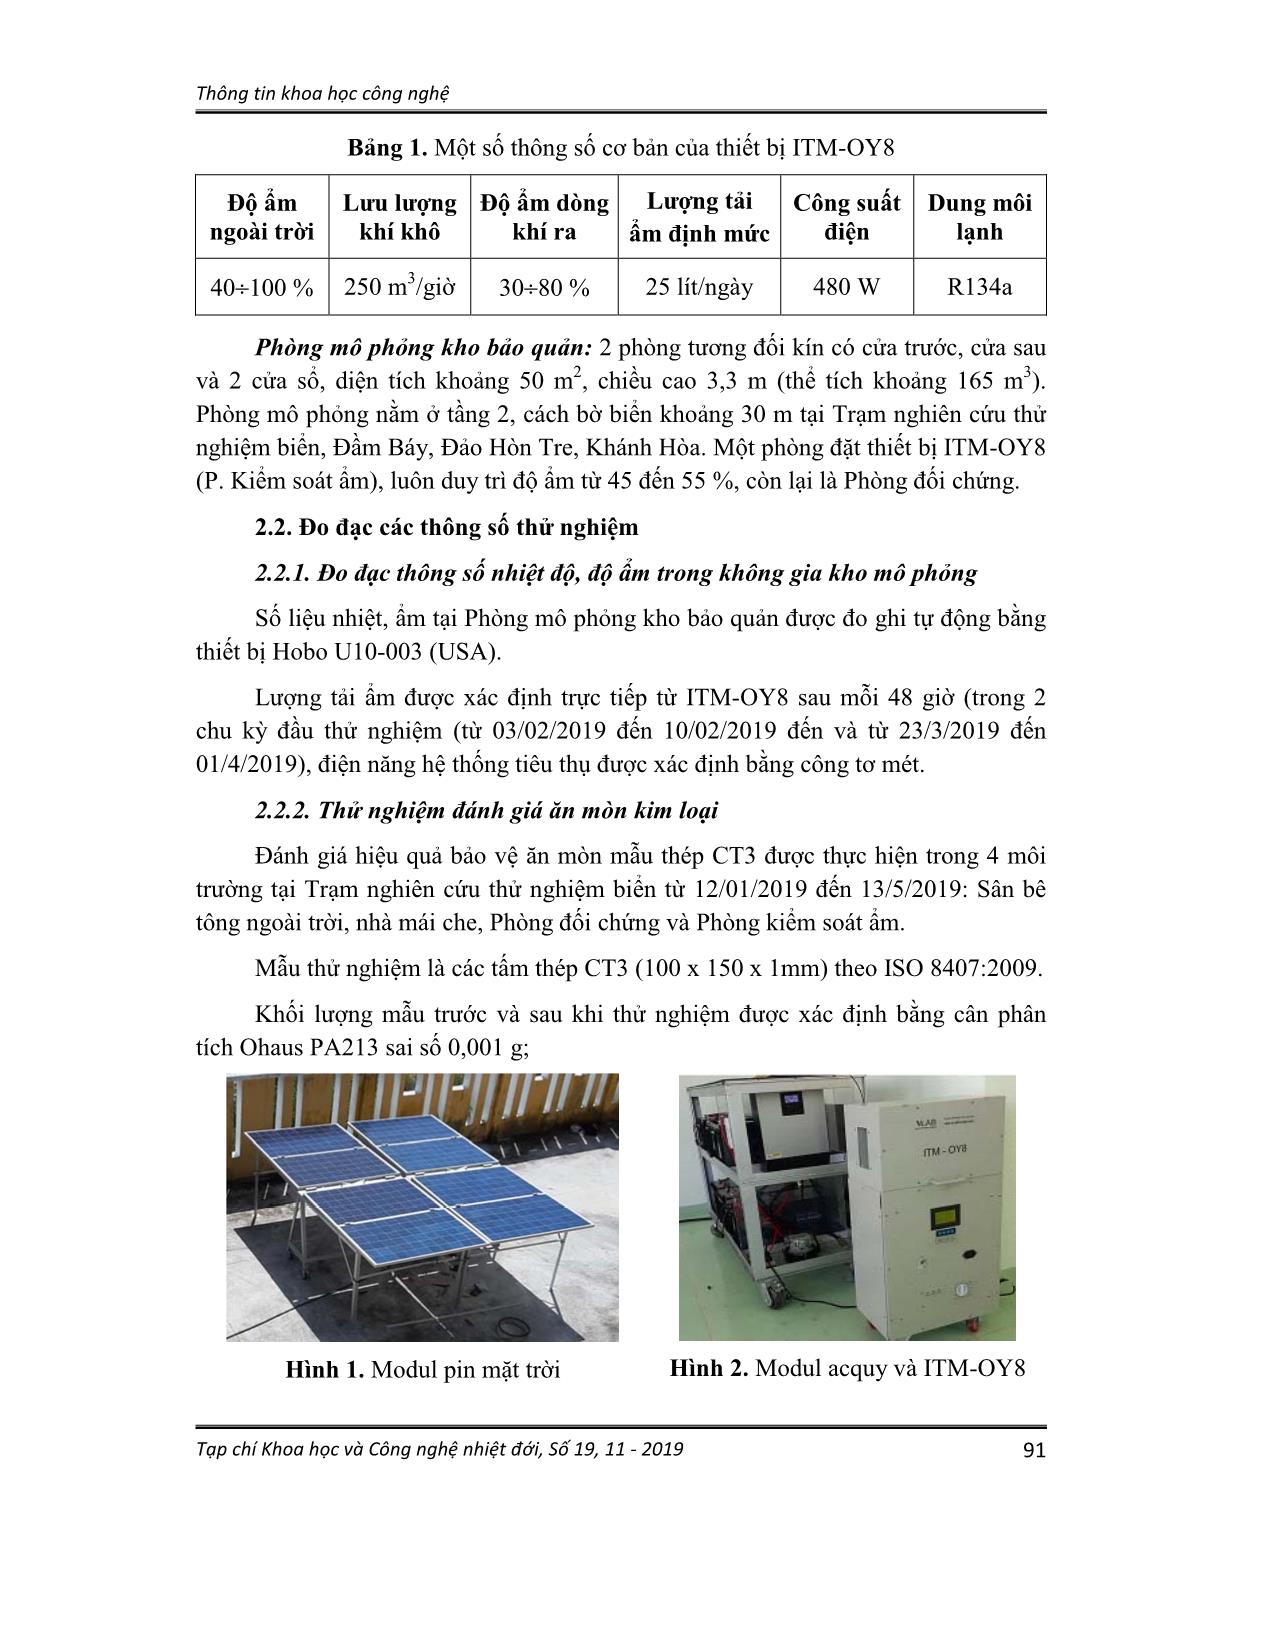 Sử dụng pin mặt trời trong việc kiểm soát ẩm tự động cho các kho bảo quản vùng biển, đảo trang 2